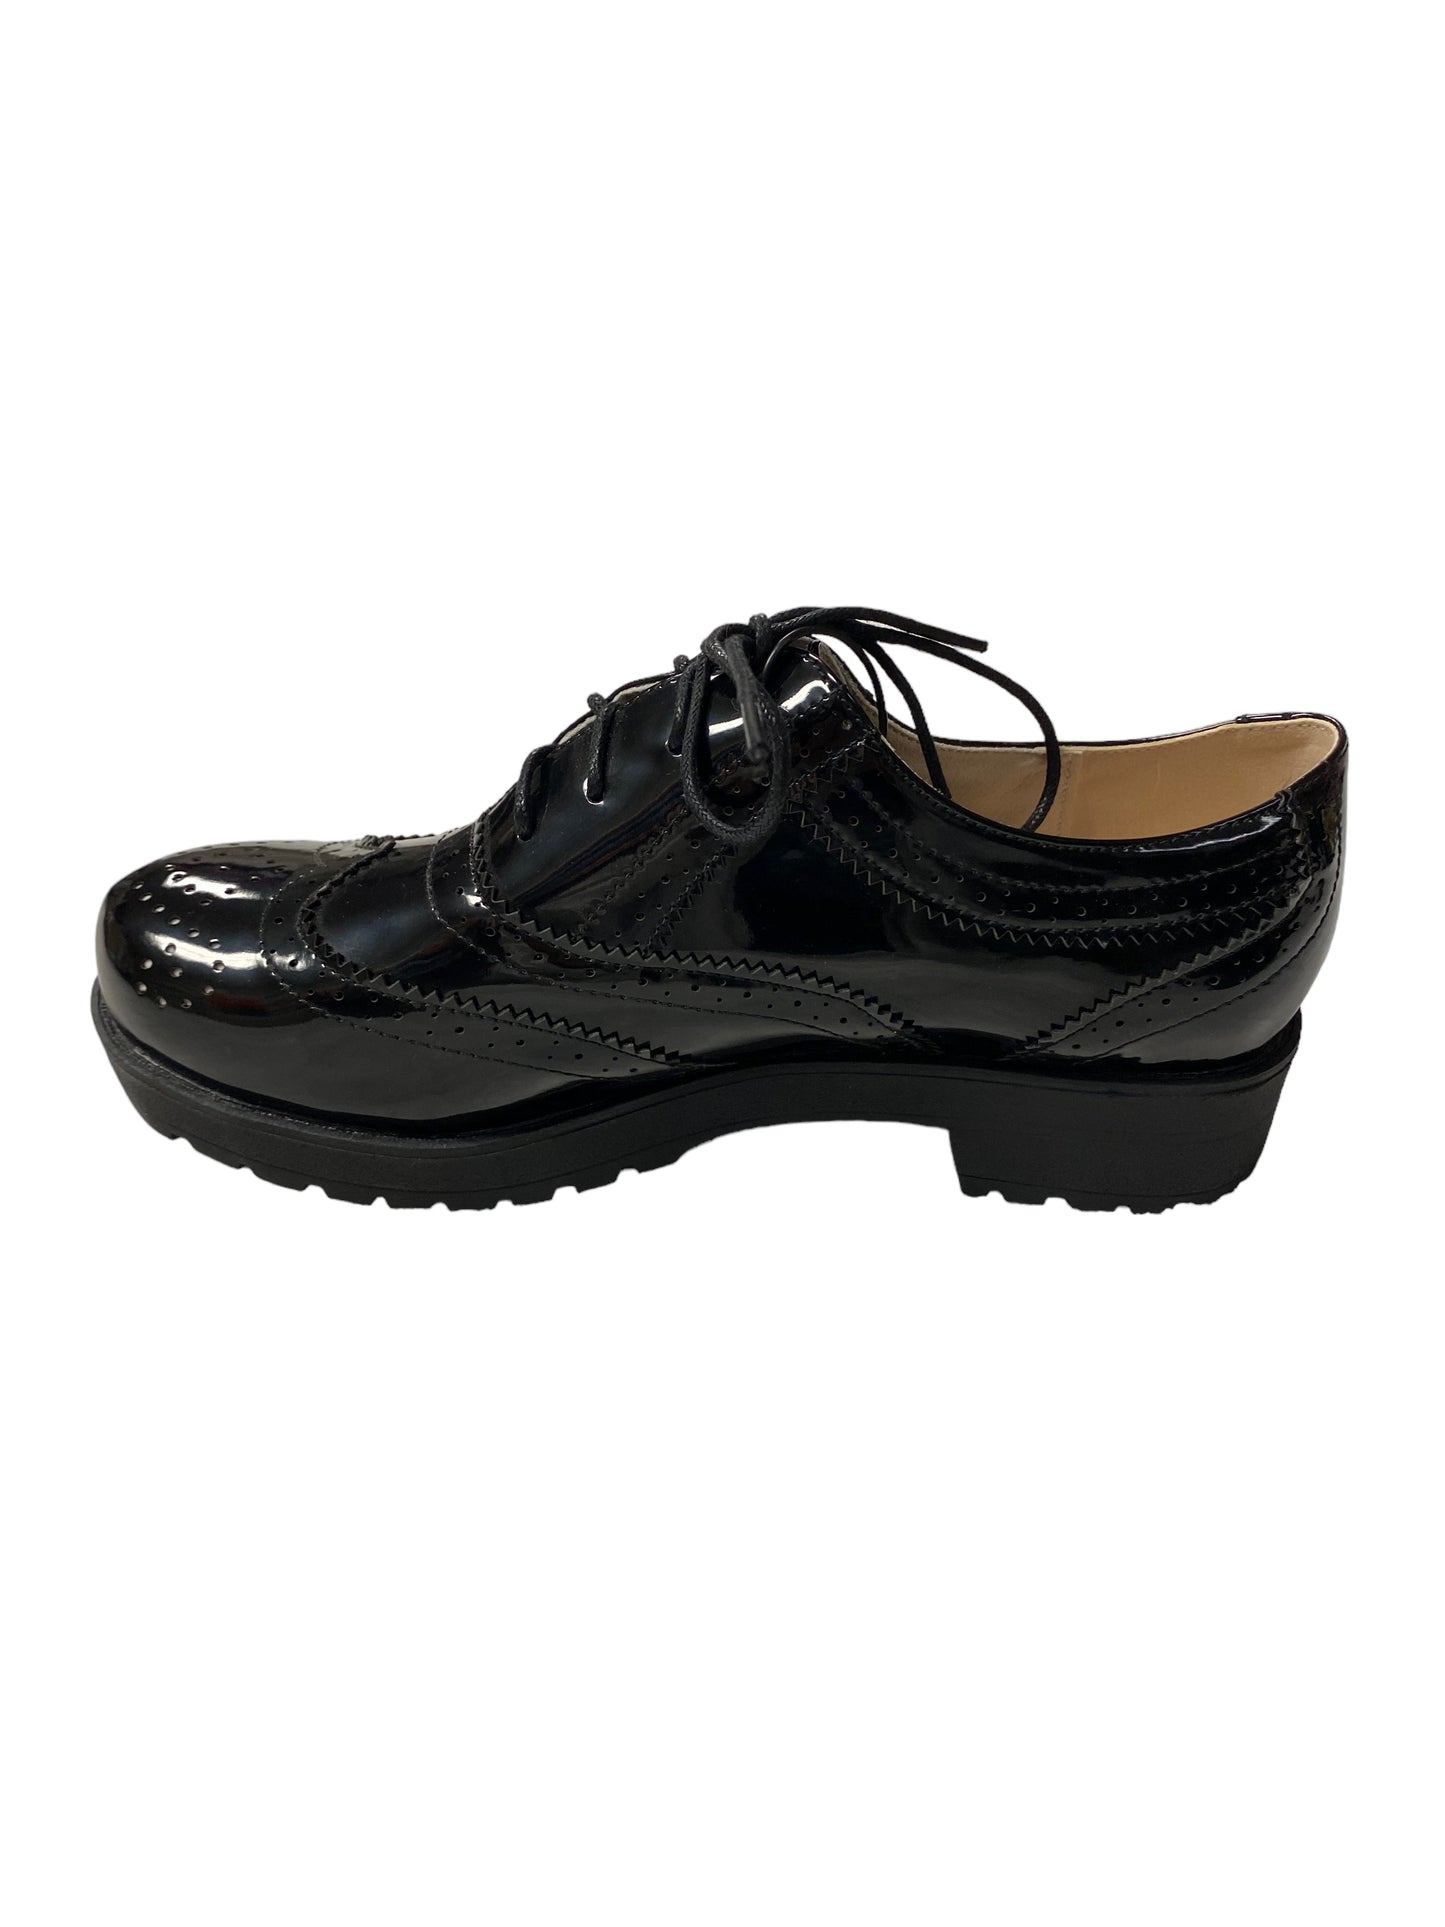 Black Shoes Flats Cmc, Size 11